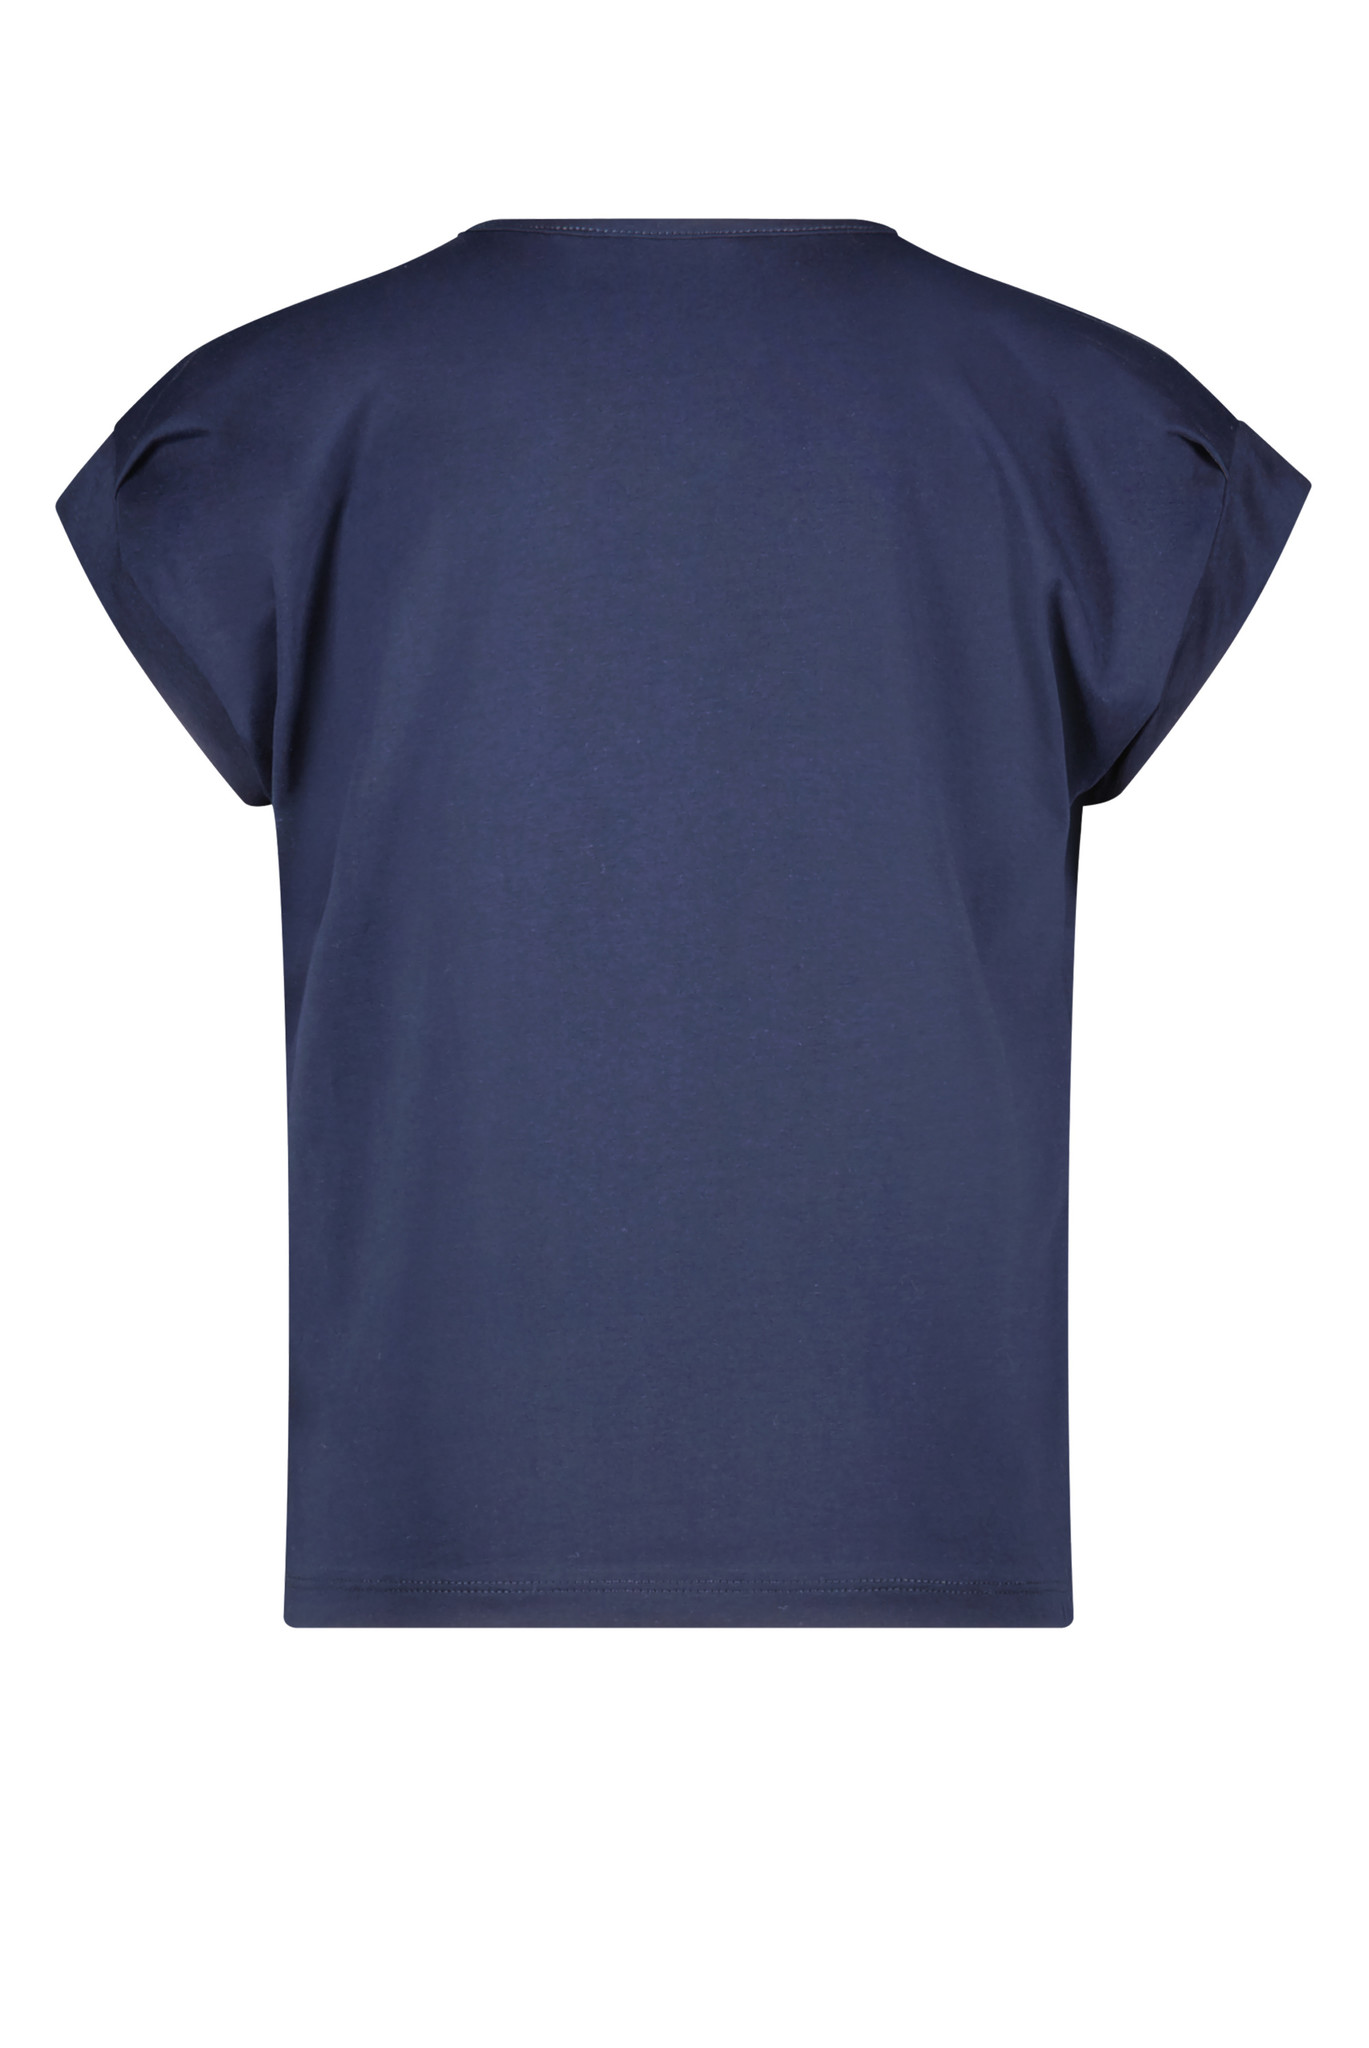 Nono Shirt NONO 5404-110 navy blazer